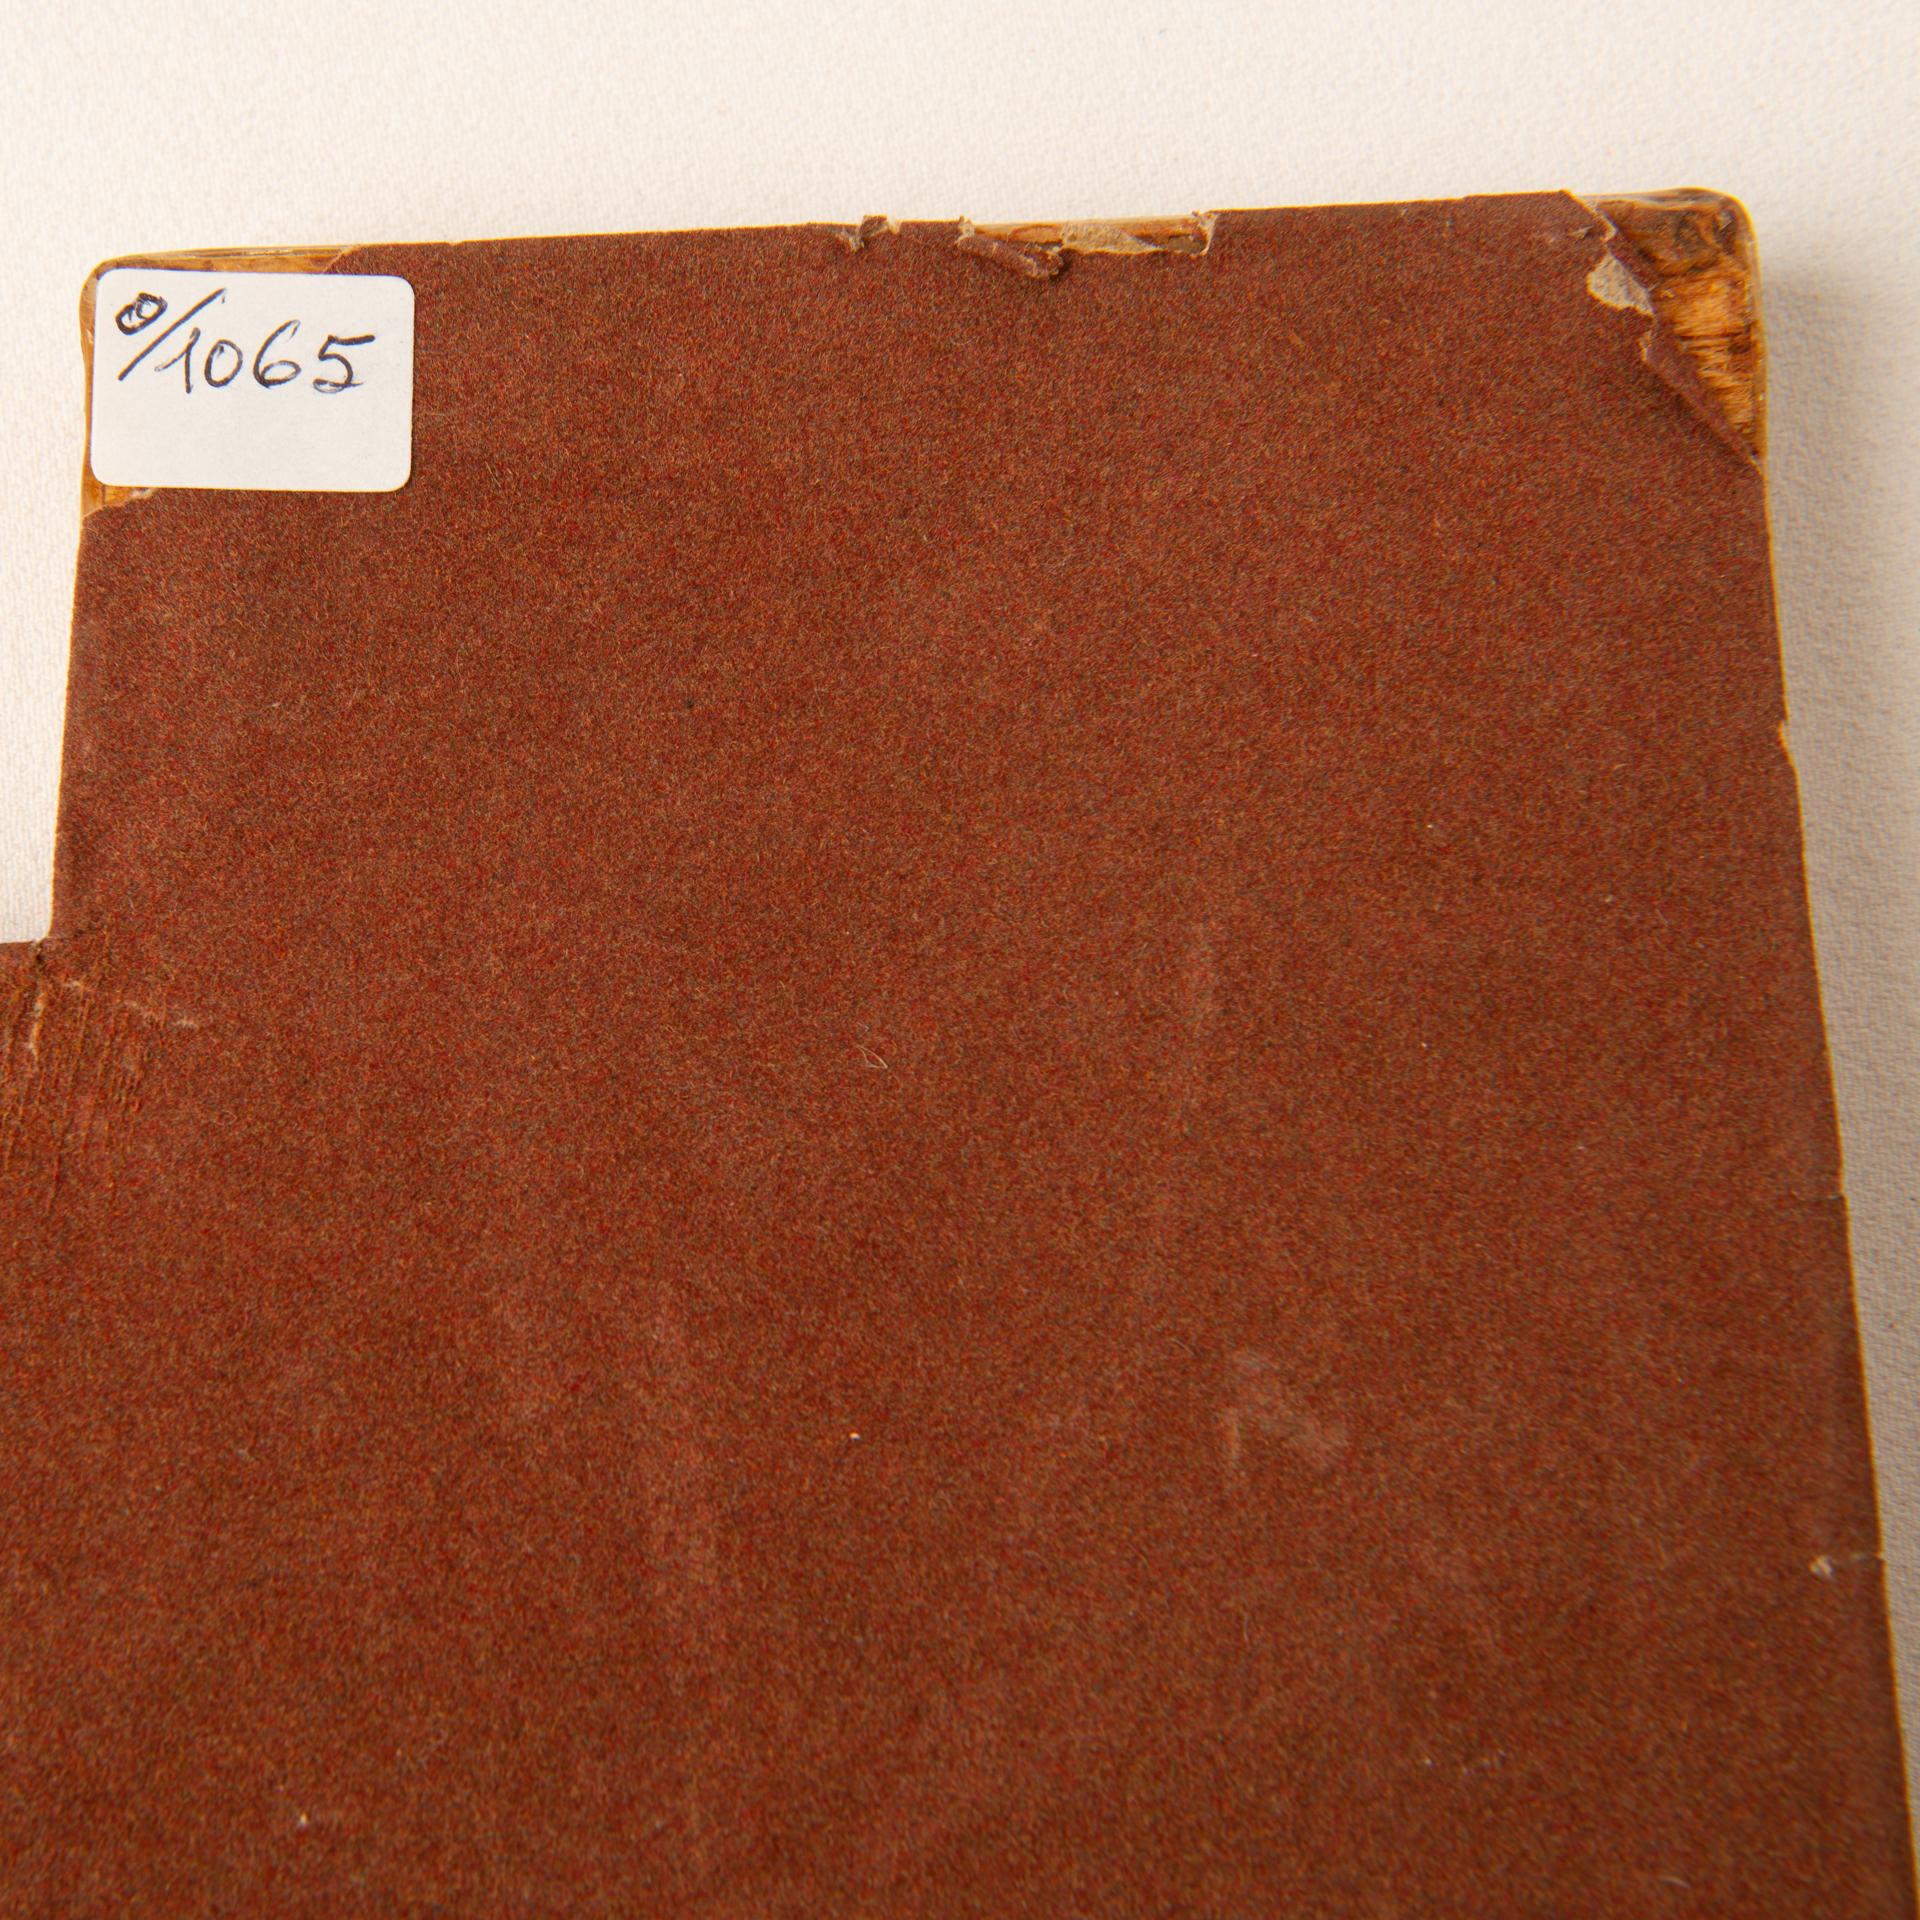 O/1065 -  Holztablett mit Tabakblättern ausgekleidet. Vor mehr als 20 Jahren von Compagnia del Tabacco hergestellt, heute selten.  NICHT in der Nähe von Wärmequellen platzieren.
Es ist sehr schön zu bewundern  und nützlich. Der innere Teil ist cm